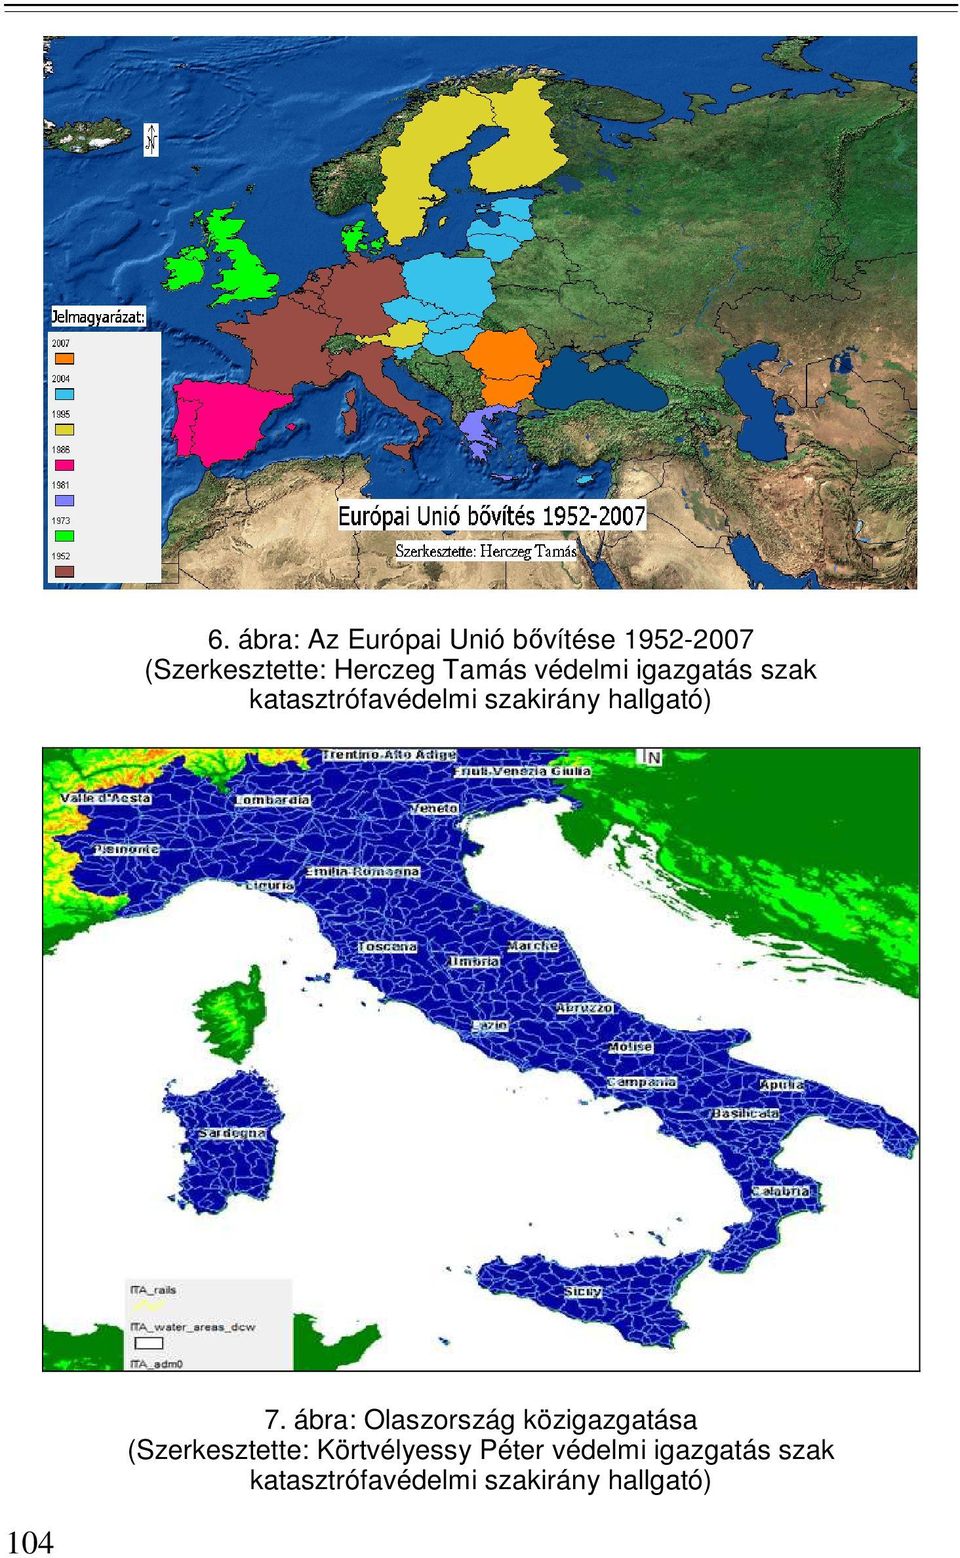 7. ábra: Olaszország közigazgatása (Szerkesztette: Körtvélyessy